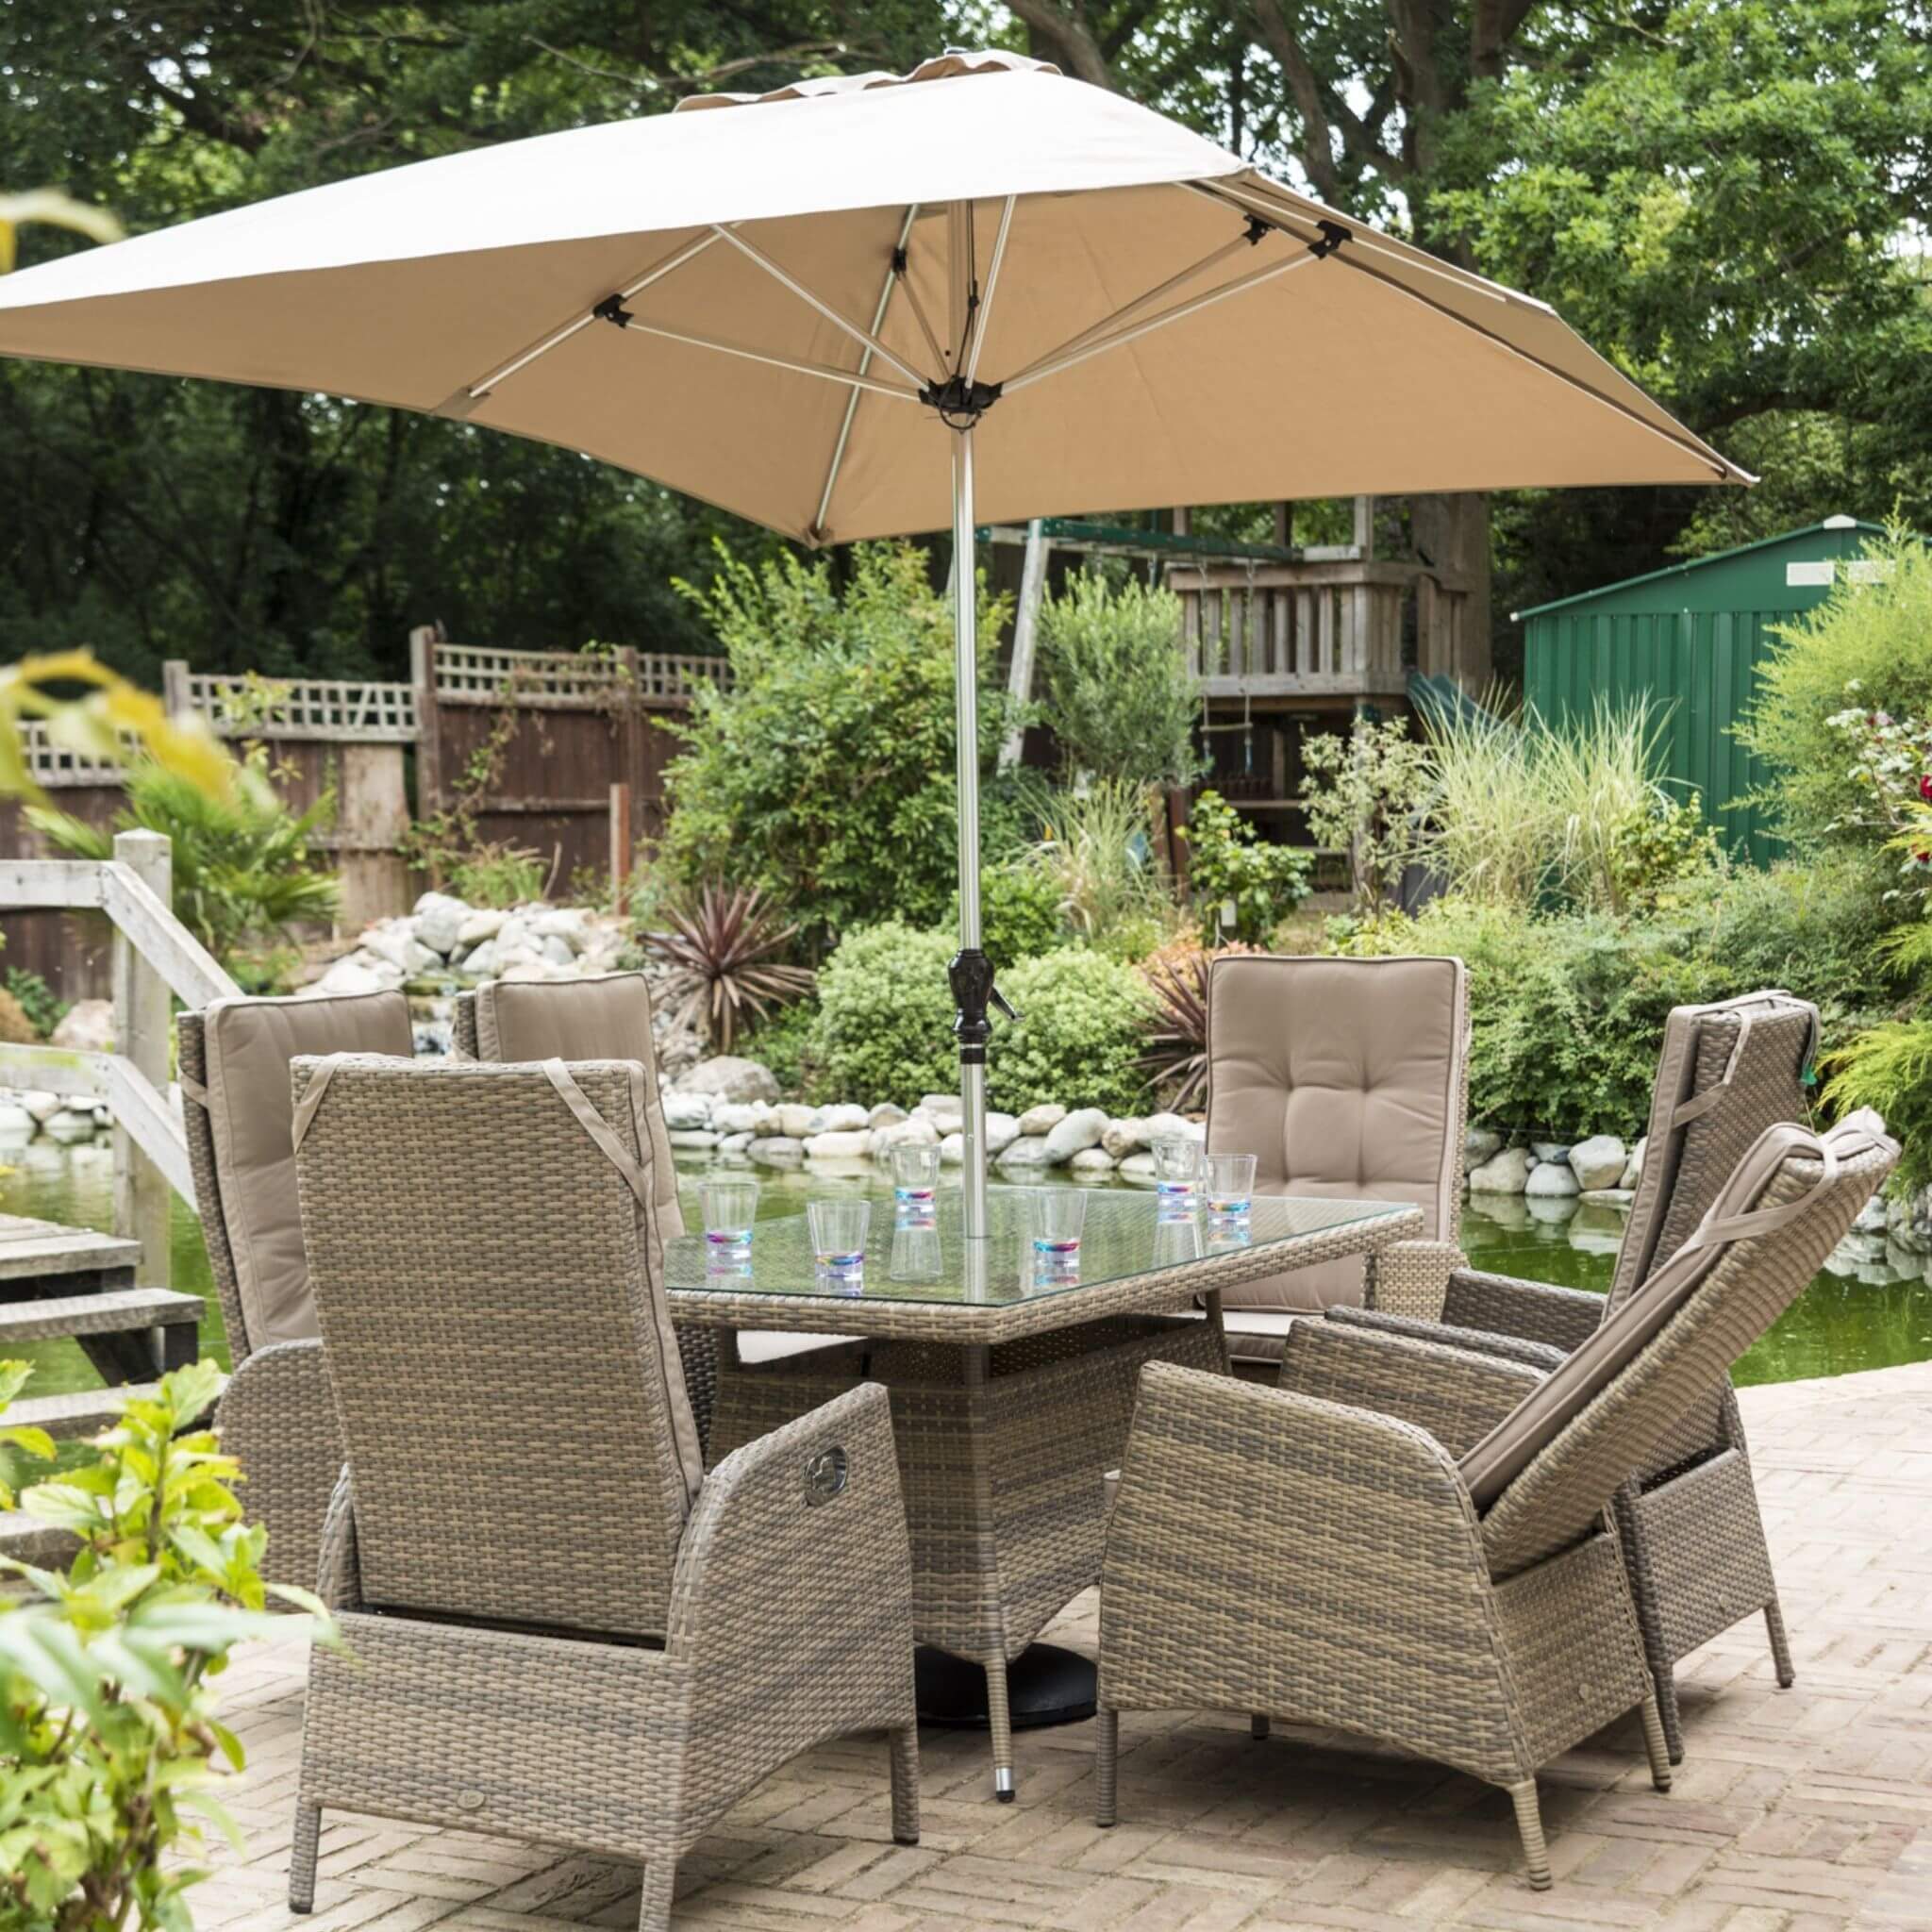 Katie Blake Sandringham 6 Seat Rattan Reclining Garden Dining Chairs, Parasol & Rectangular Table Set